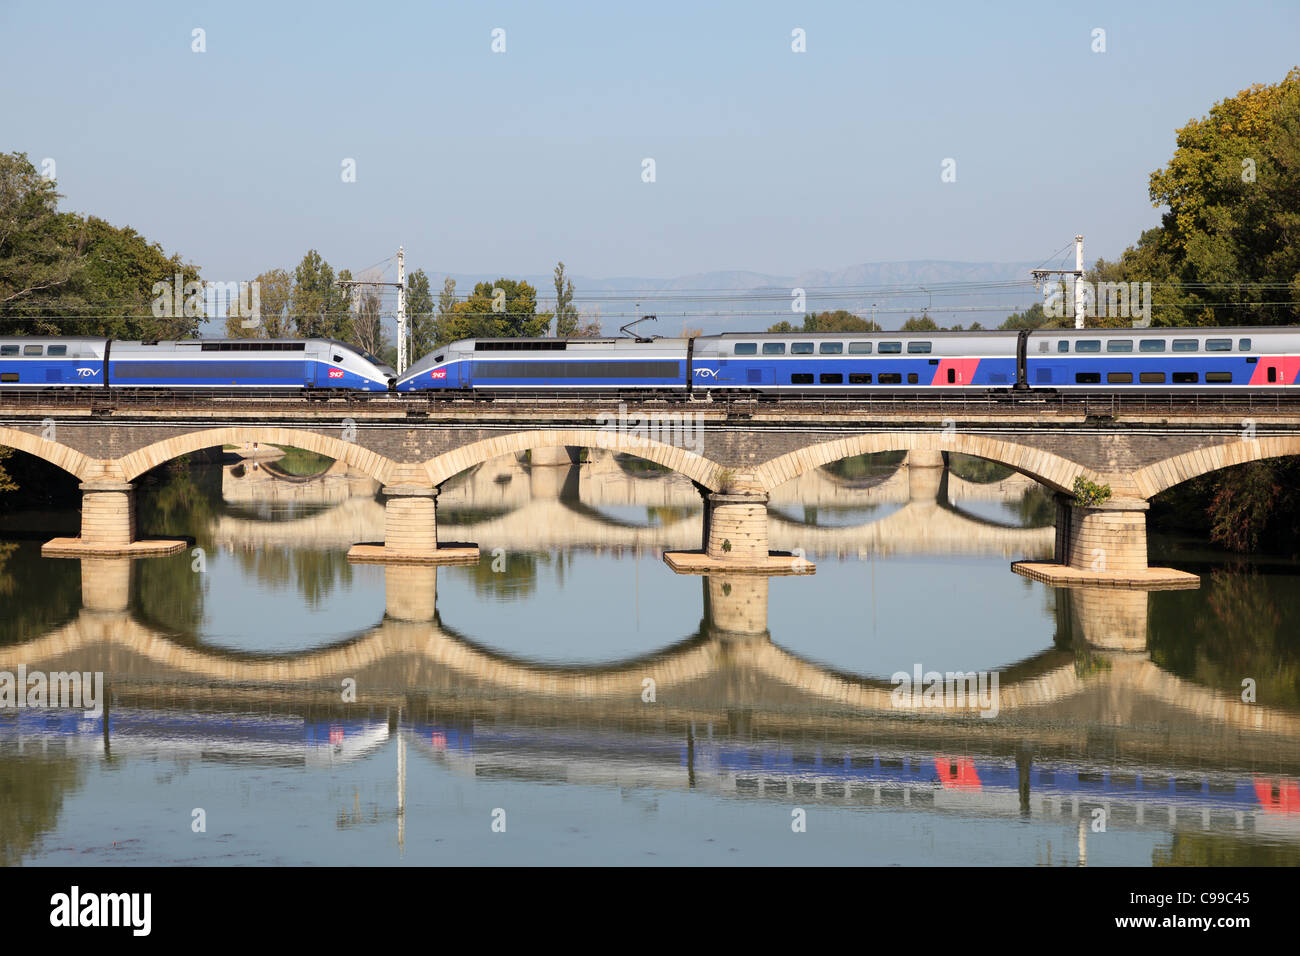 Tren de alta velocidad francés TGV cruzando el puente en Beziers, Francia Foto de stock